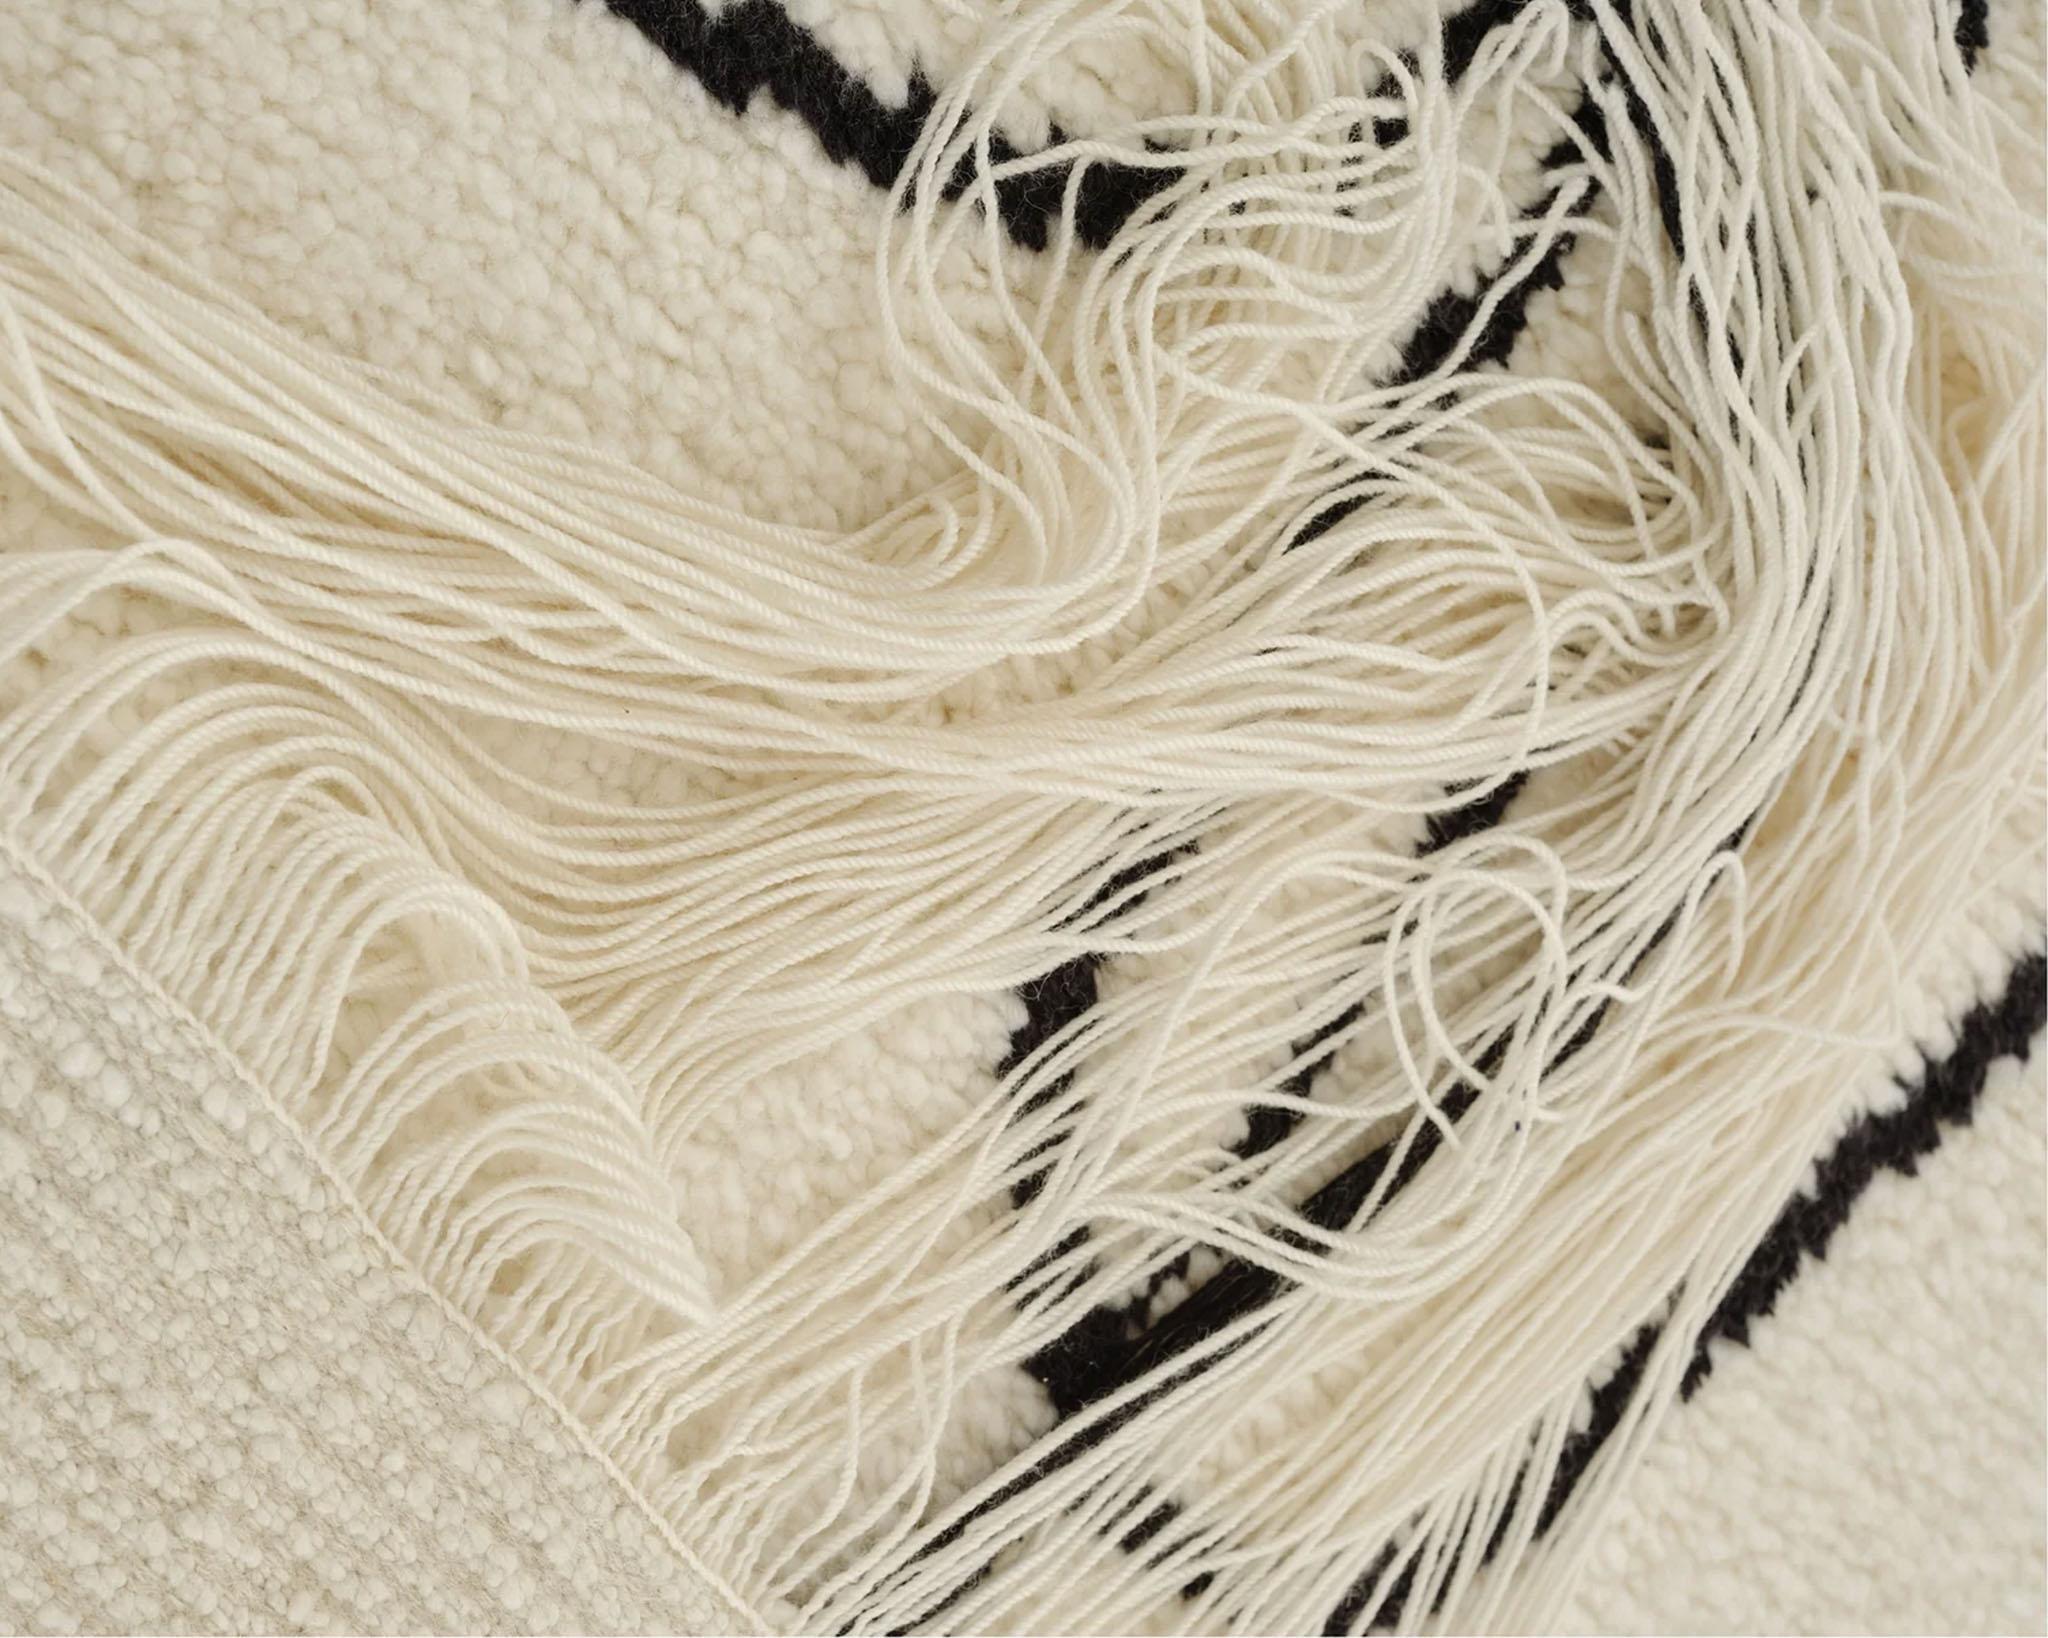 Inner Haze, 'Axiom' collection by Linie Design

Abstrakter Teppich. 
MATERIALIEN:  100% Wolle
Handgeknüpfter Teppich

Abmessungen: 190 cm x 135 cm

Ein kunstvoller und visuell verführerischer handgeknüpfter Teppich von Linie Design. Die weichen